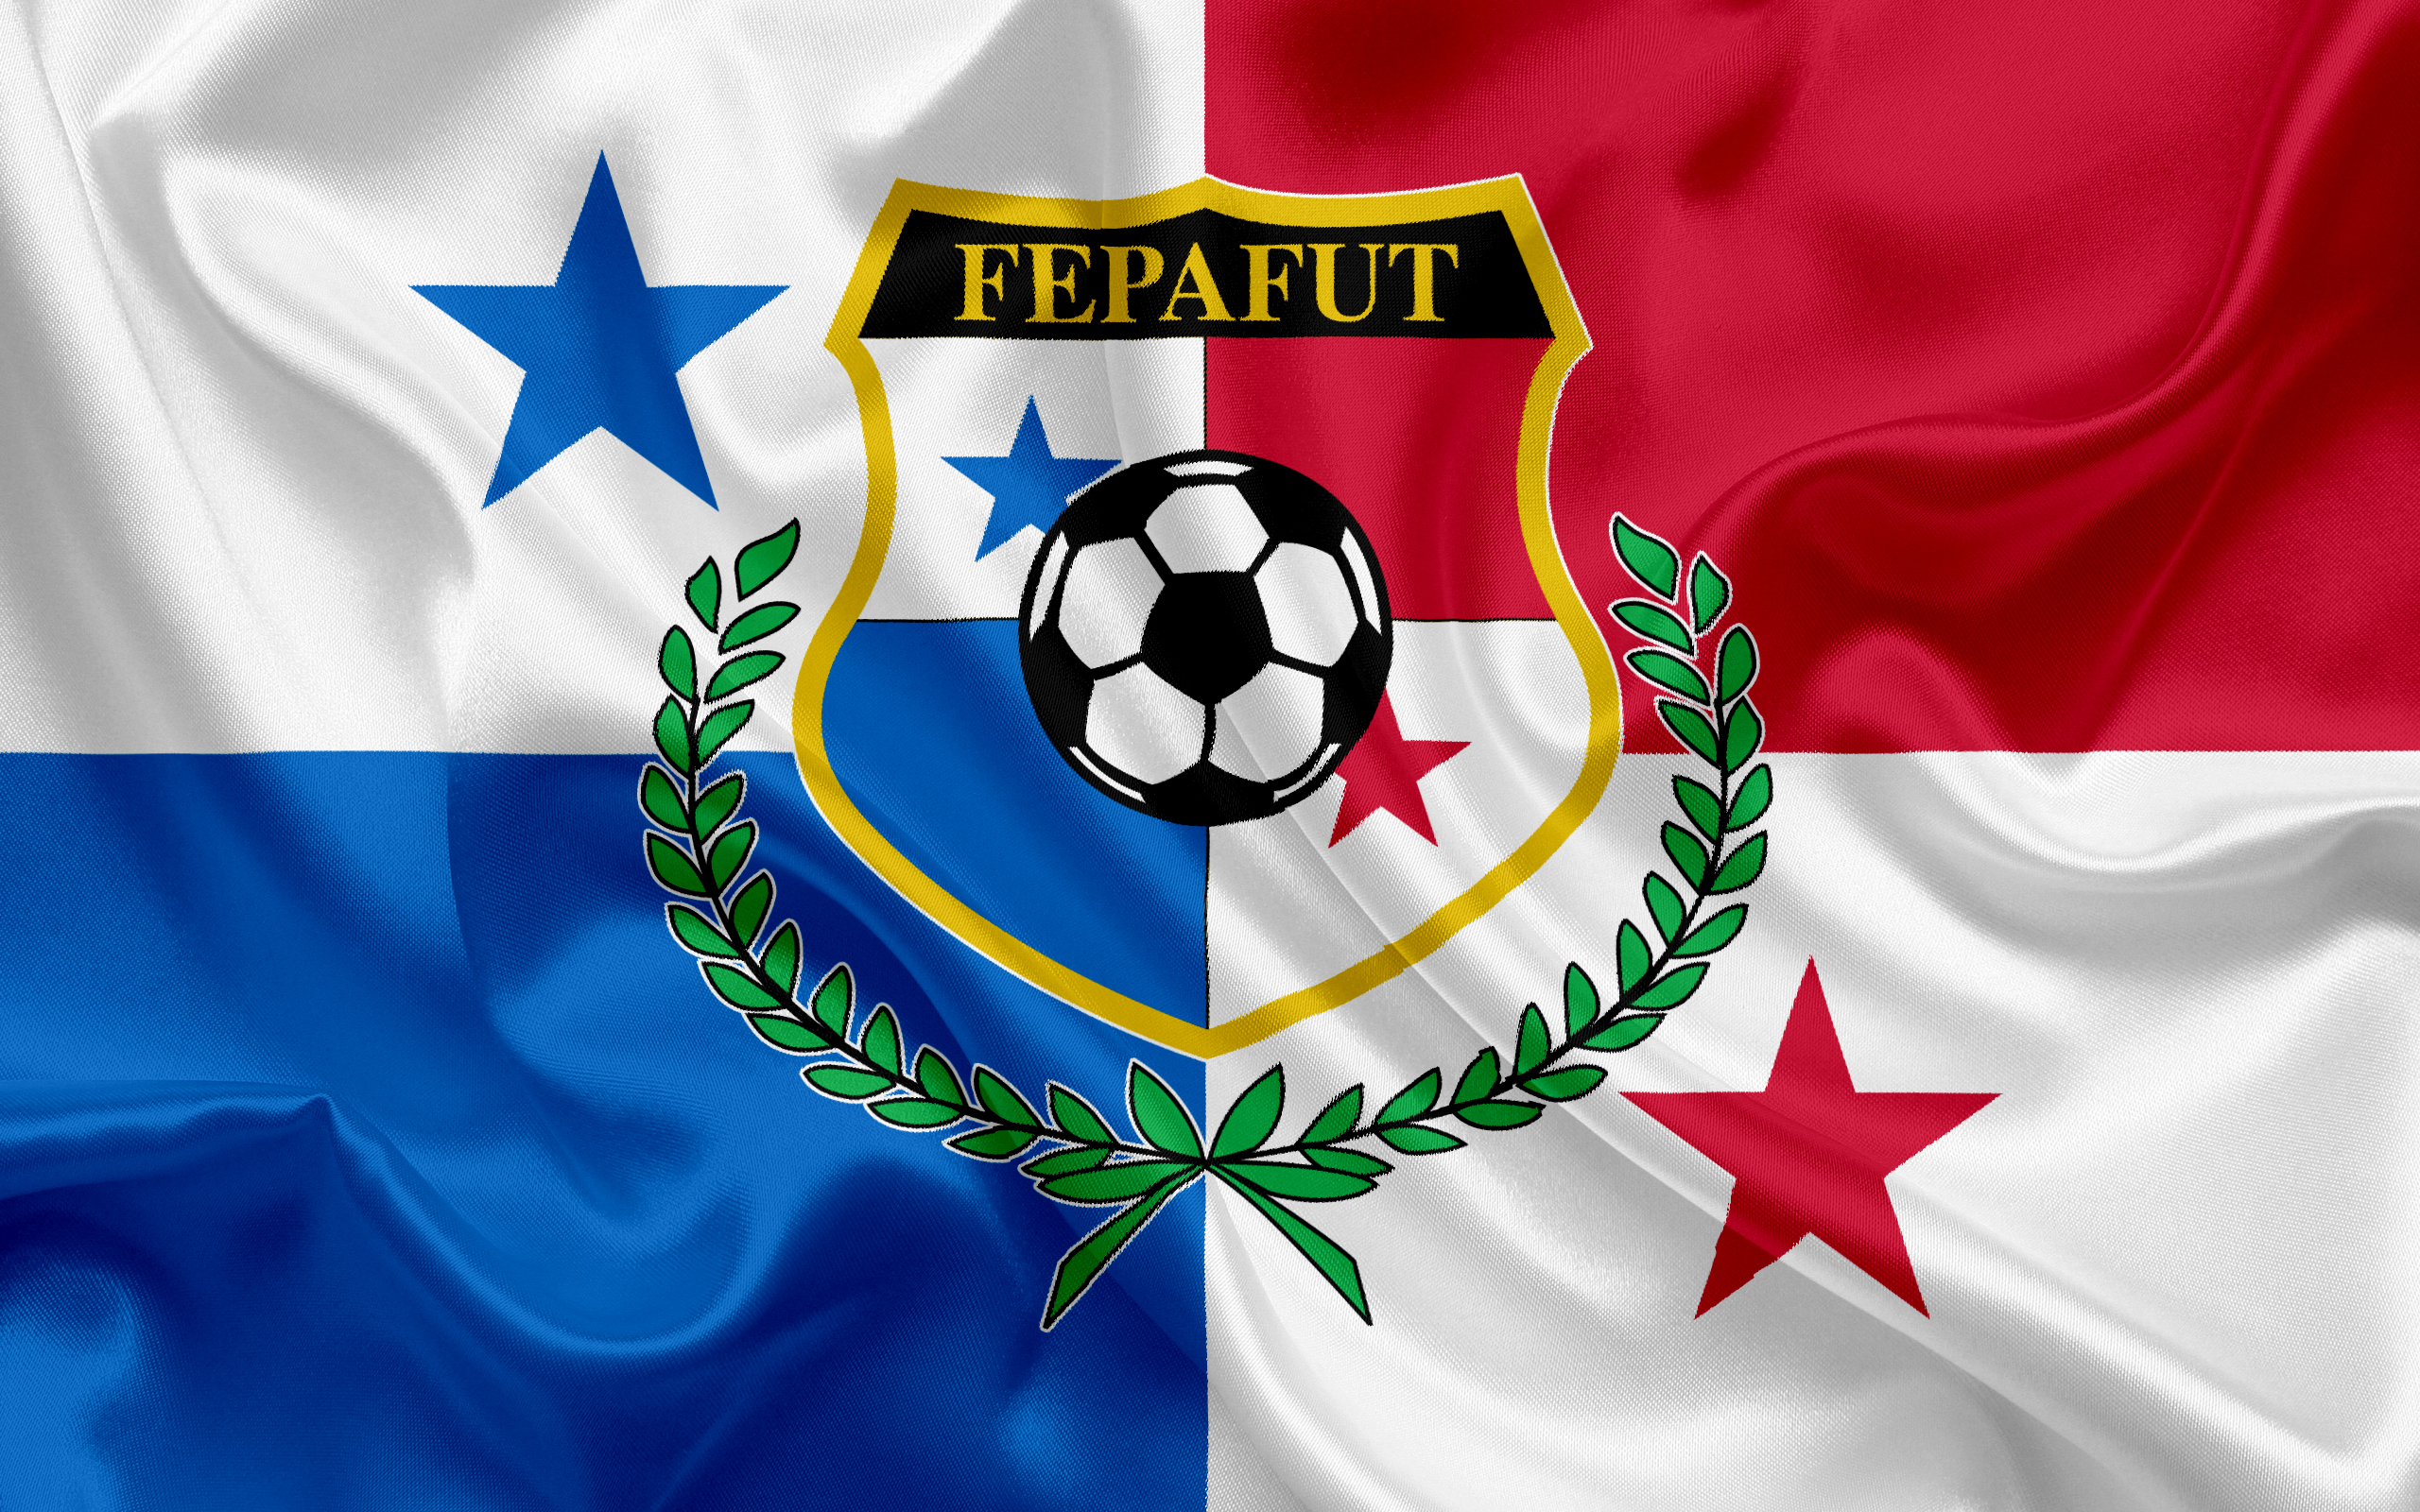 Скачать обои Сборная Панамы По Футболу на телефон бесплатно